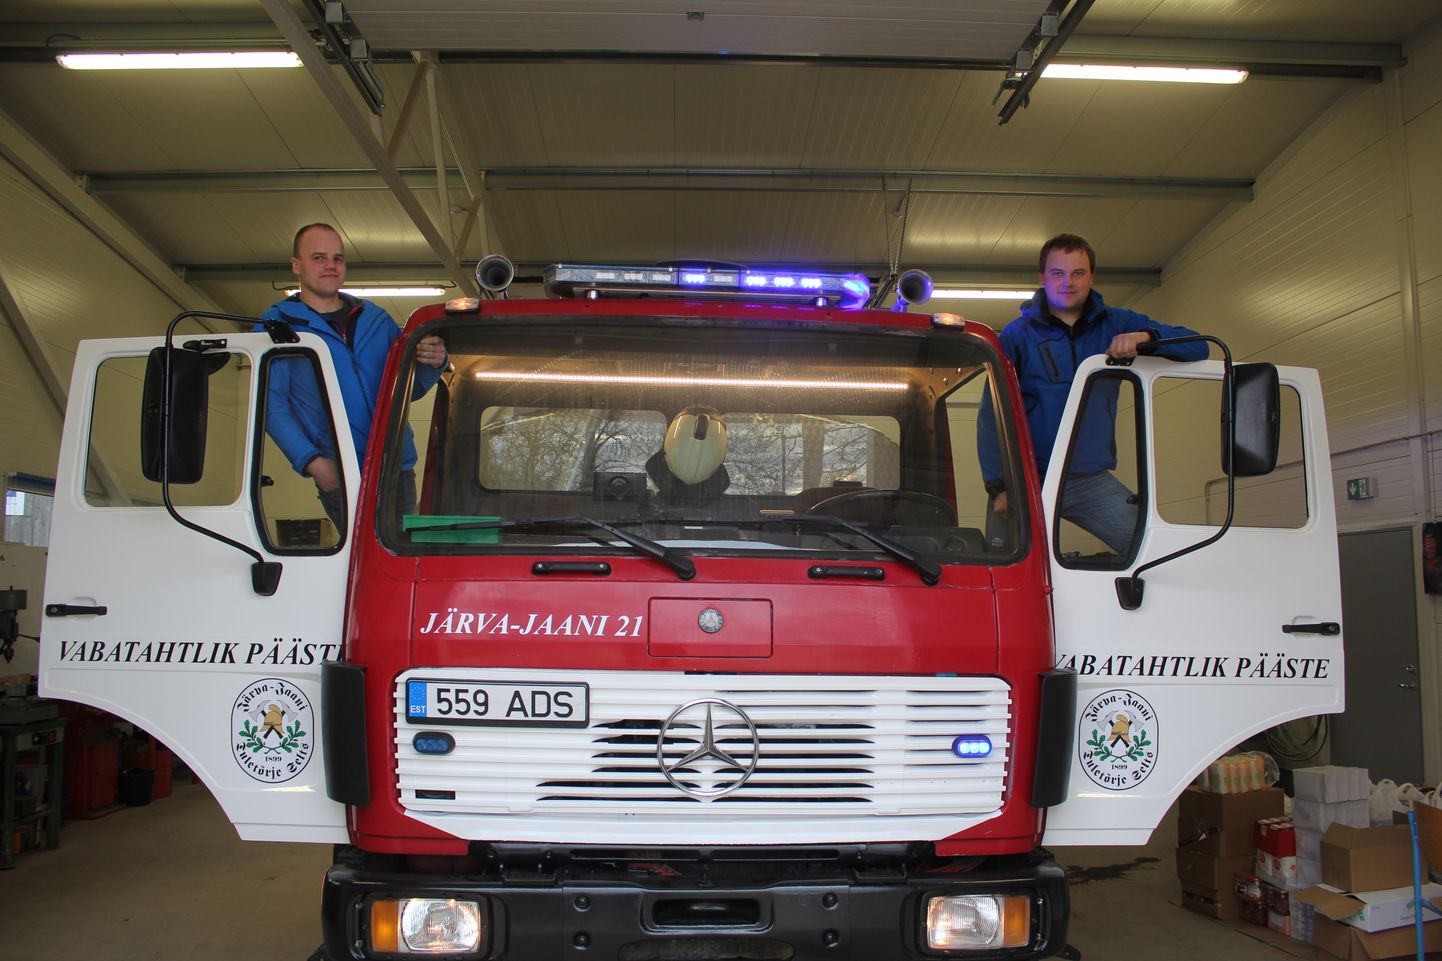 Järva-Jaani vabatahtlike päästjate ülesvuntsitud päästeauto ja remondiboks